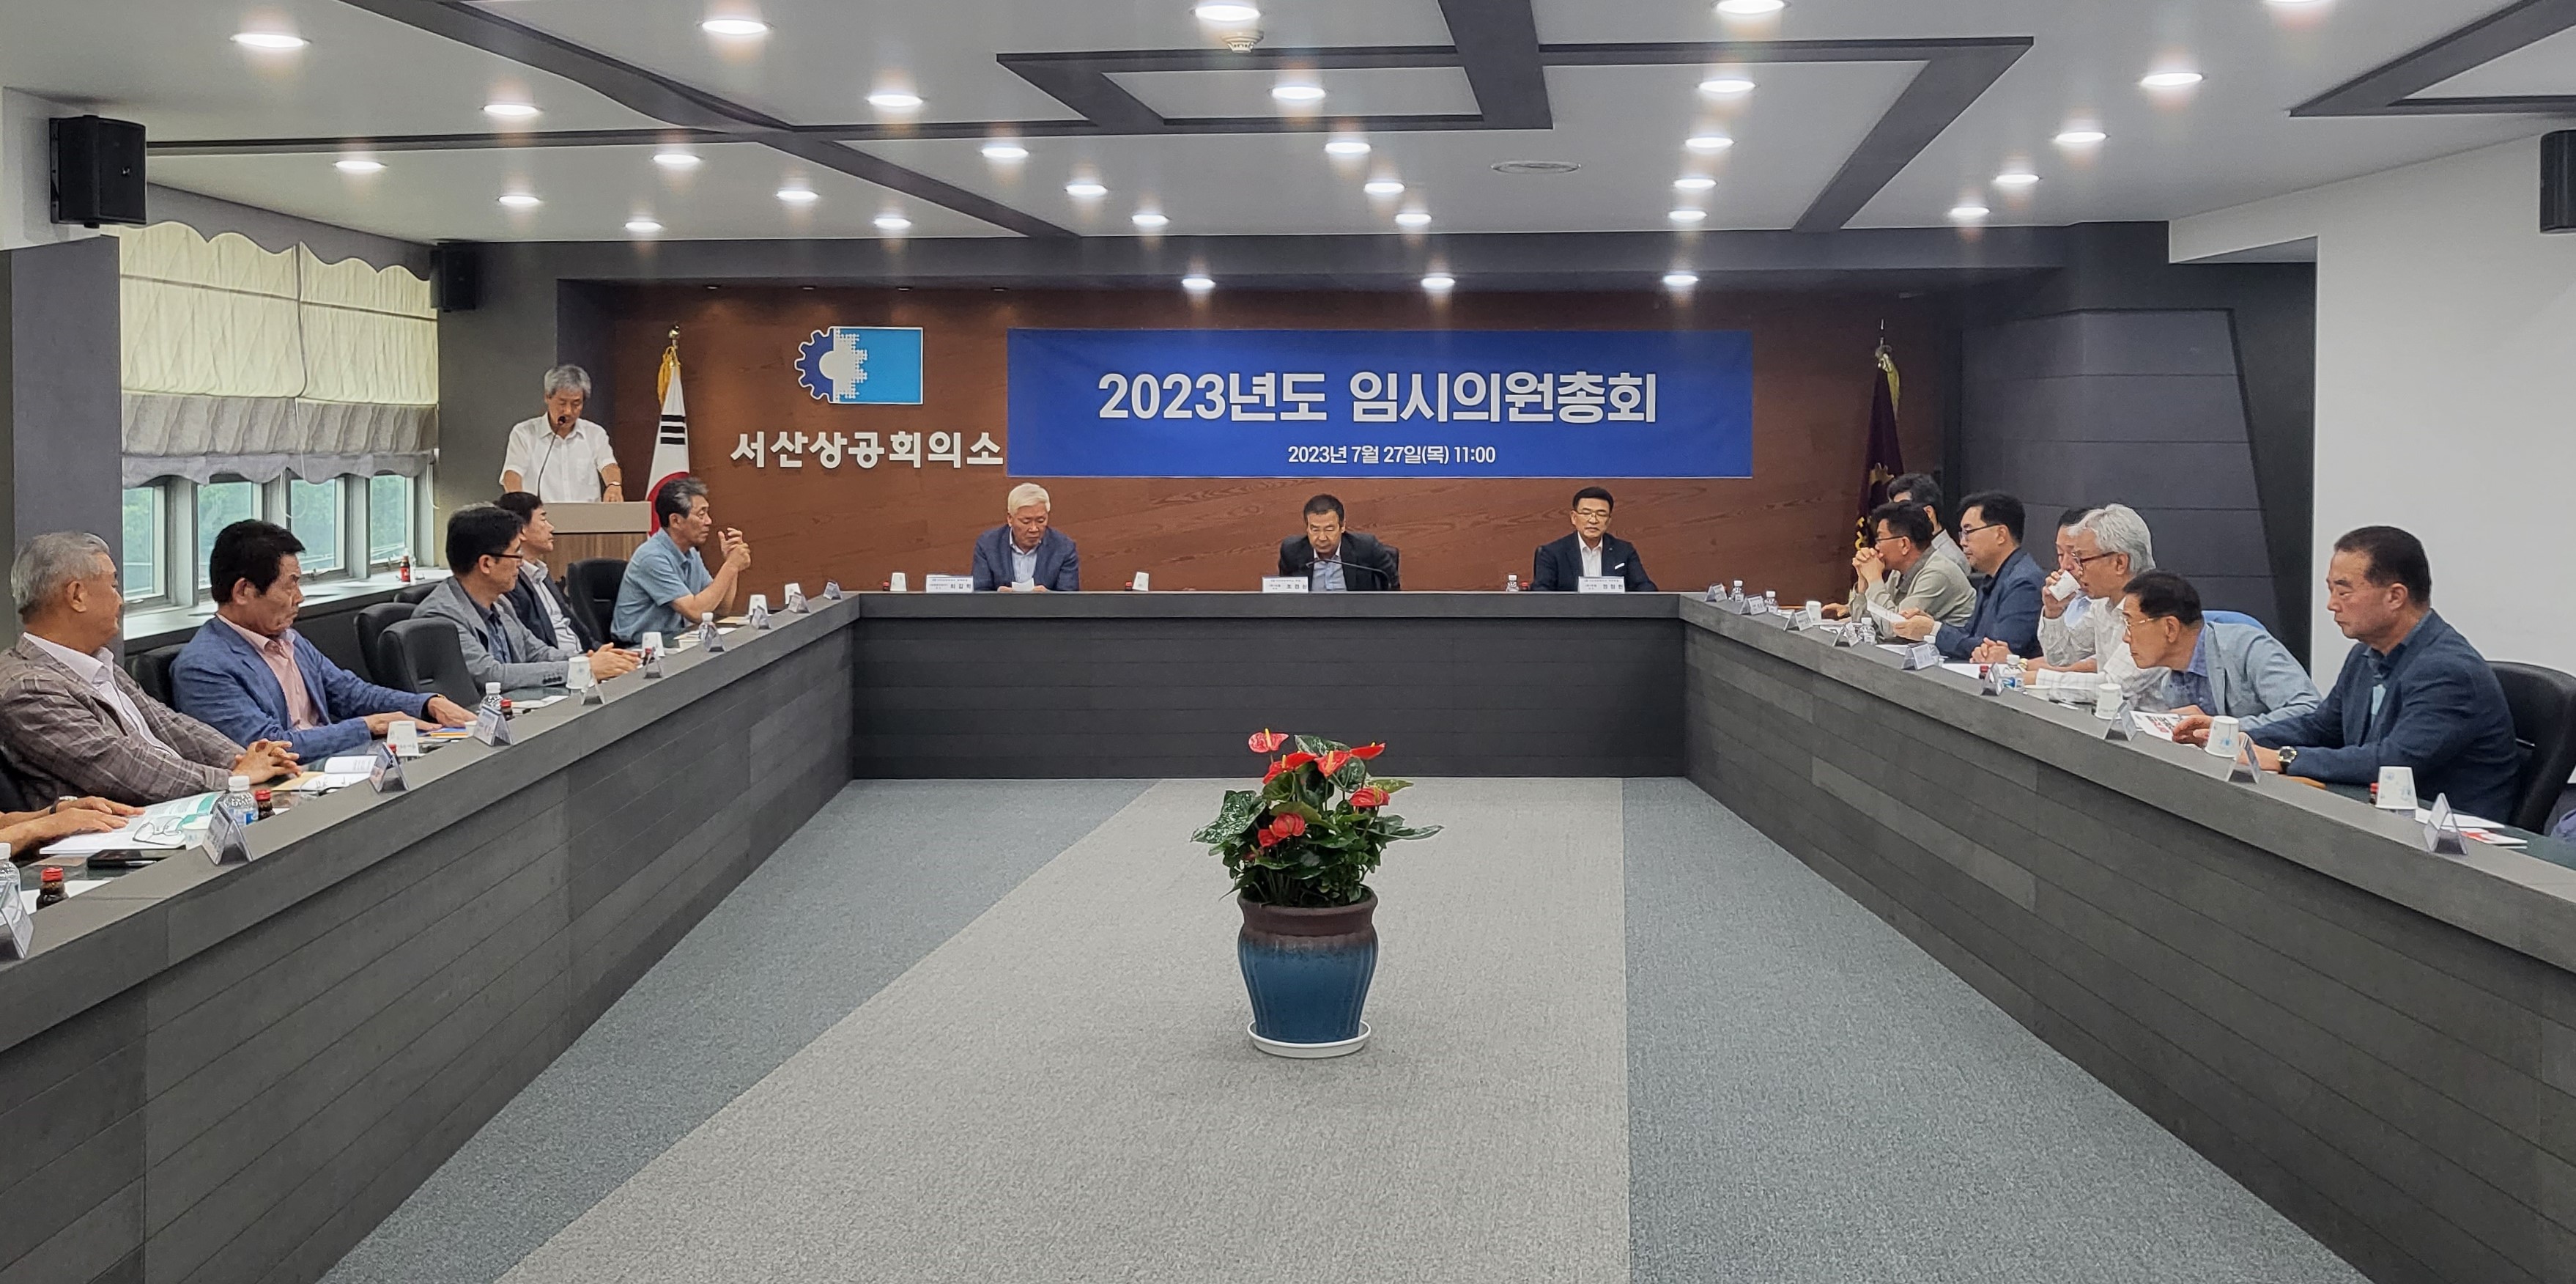 2023년도 임시의원총회 개최